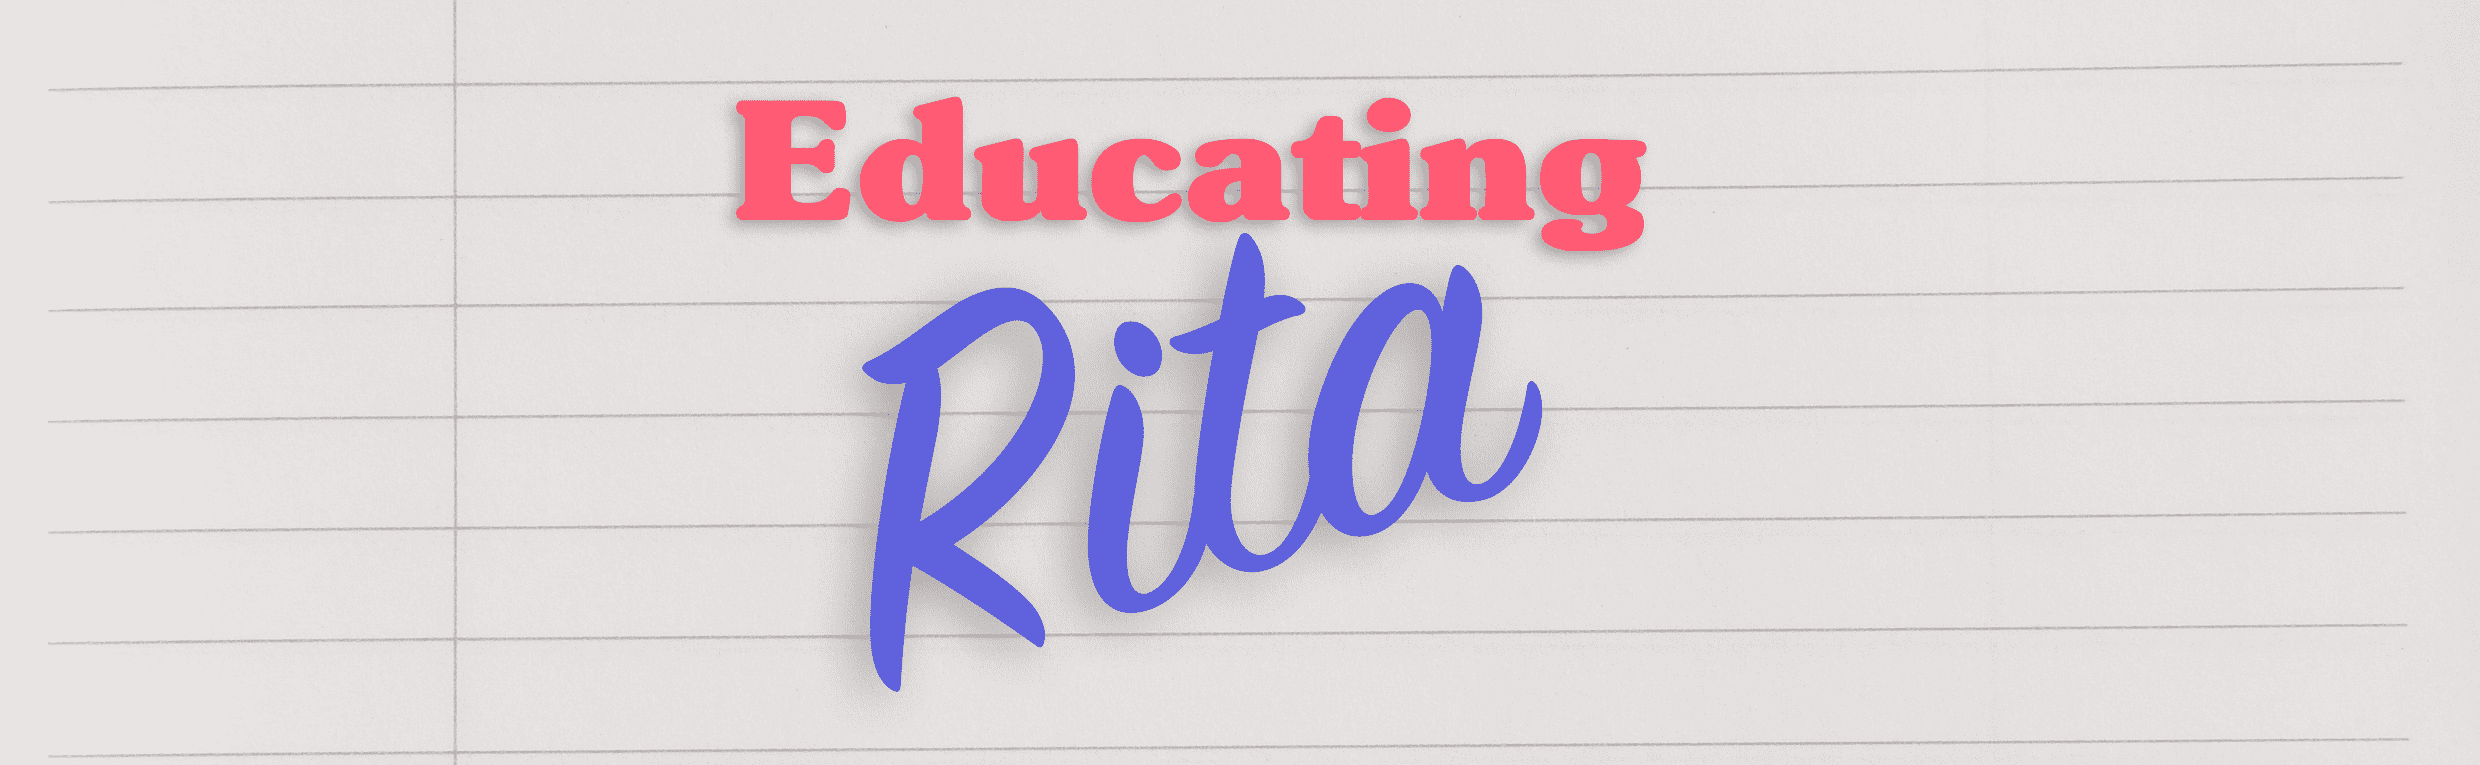 Educating Rita - A Great Education!